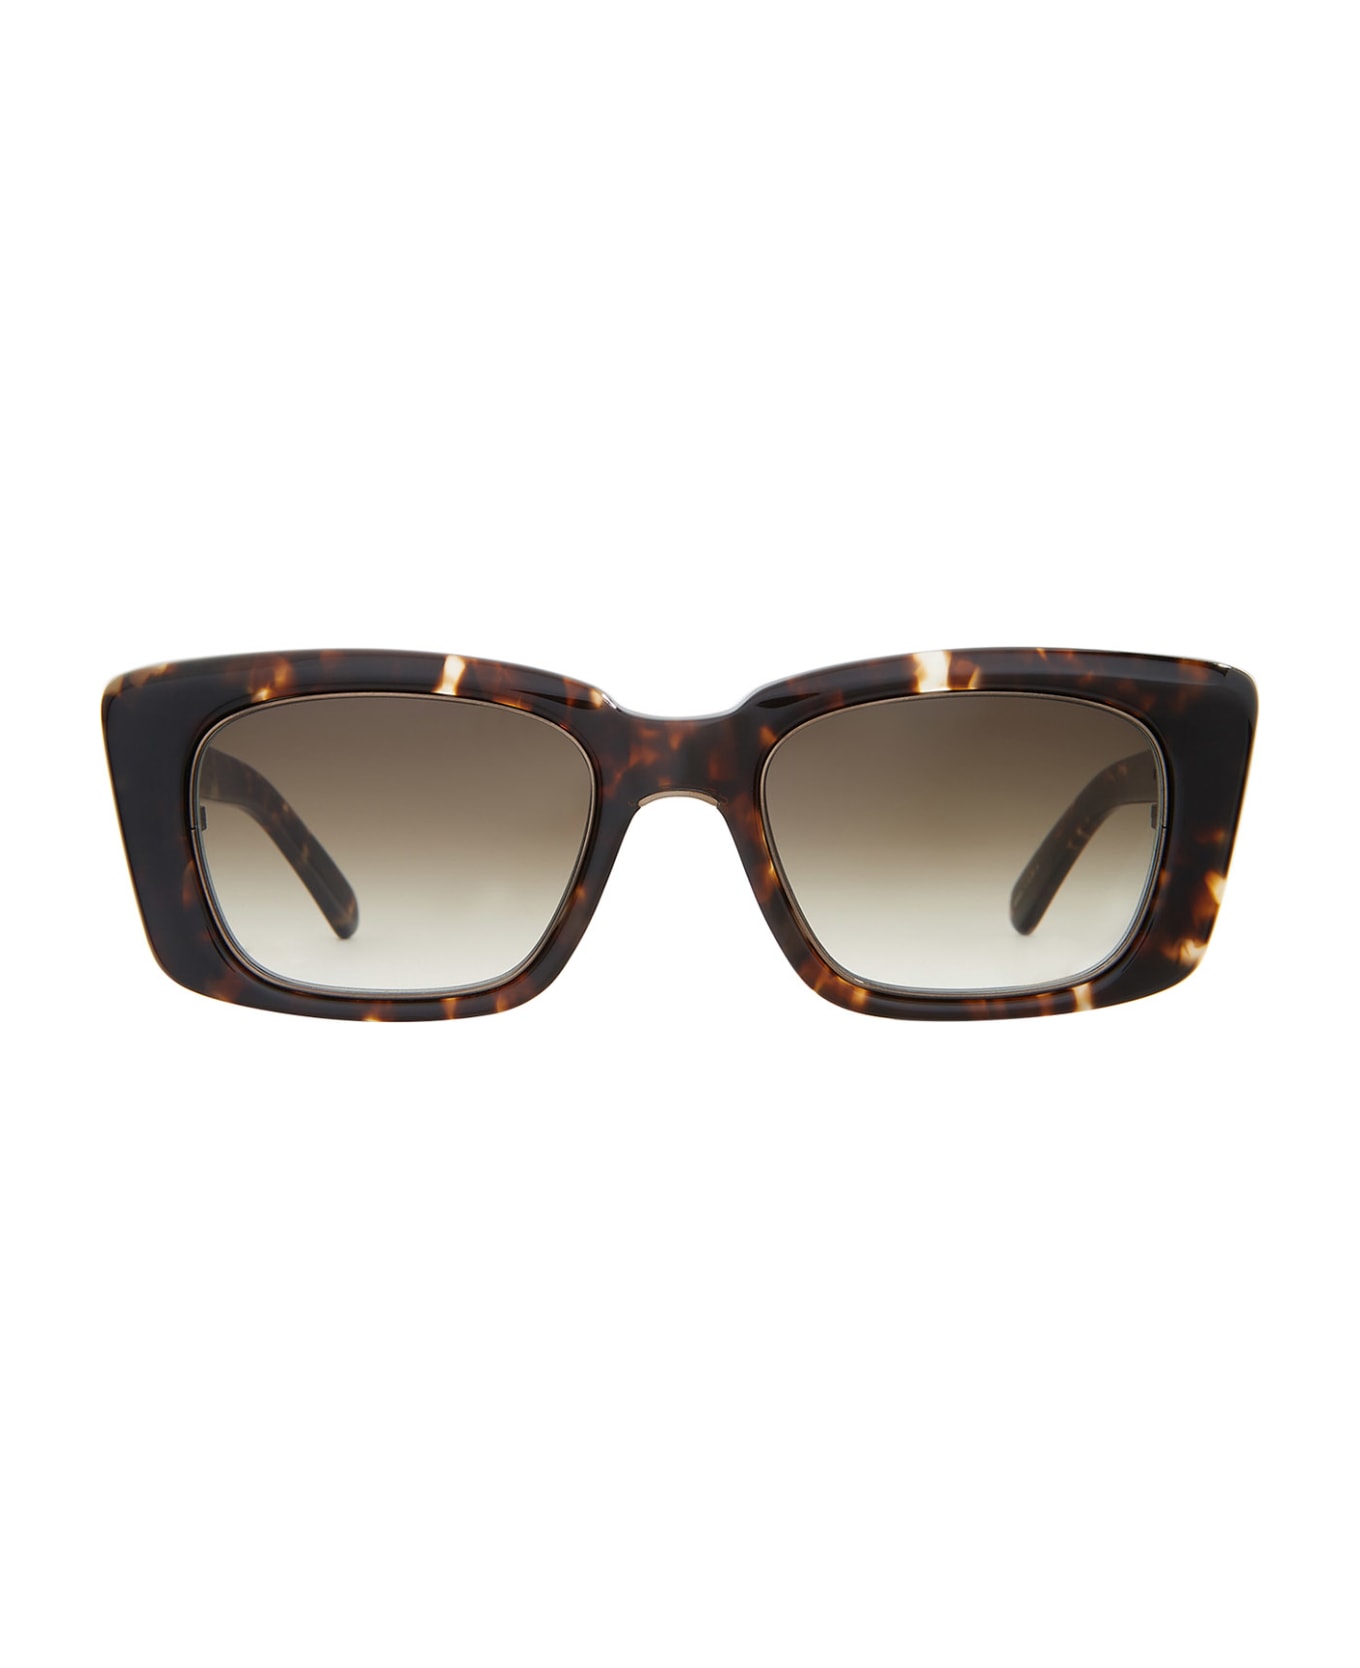 Mr. Leight Carman S Leopard Tortoise Sunglasses - Leopard Tortoise サングラス